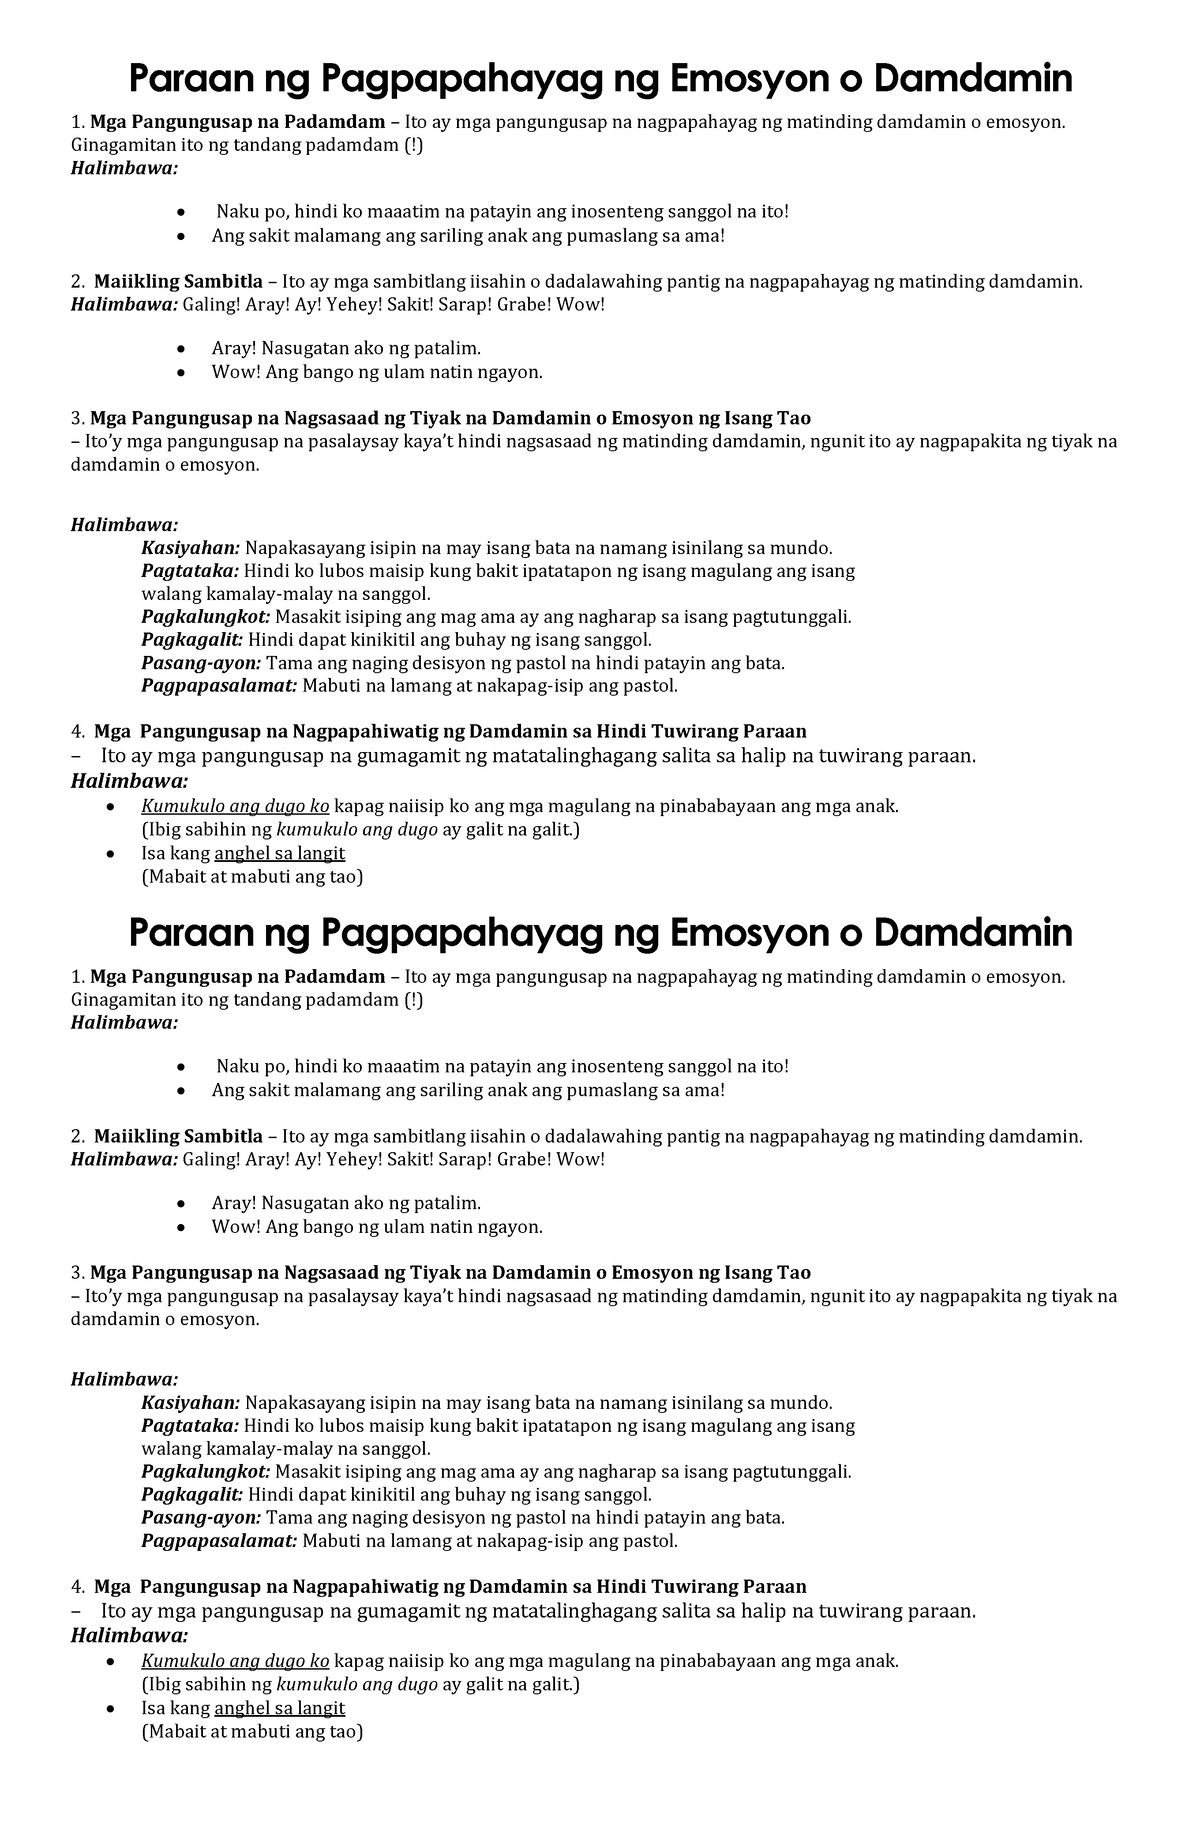 Worksheets On Pagpapahayag Ng Damdamin At Emosyon Mapawi Emosyon Hot